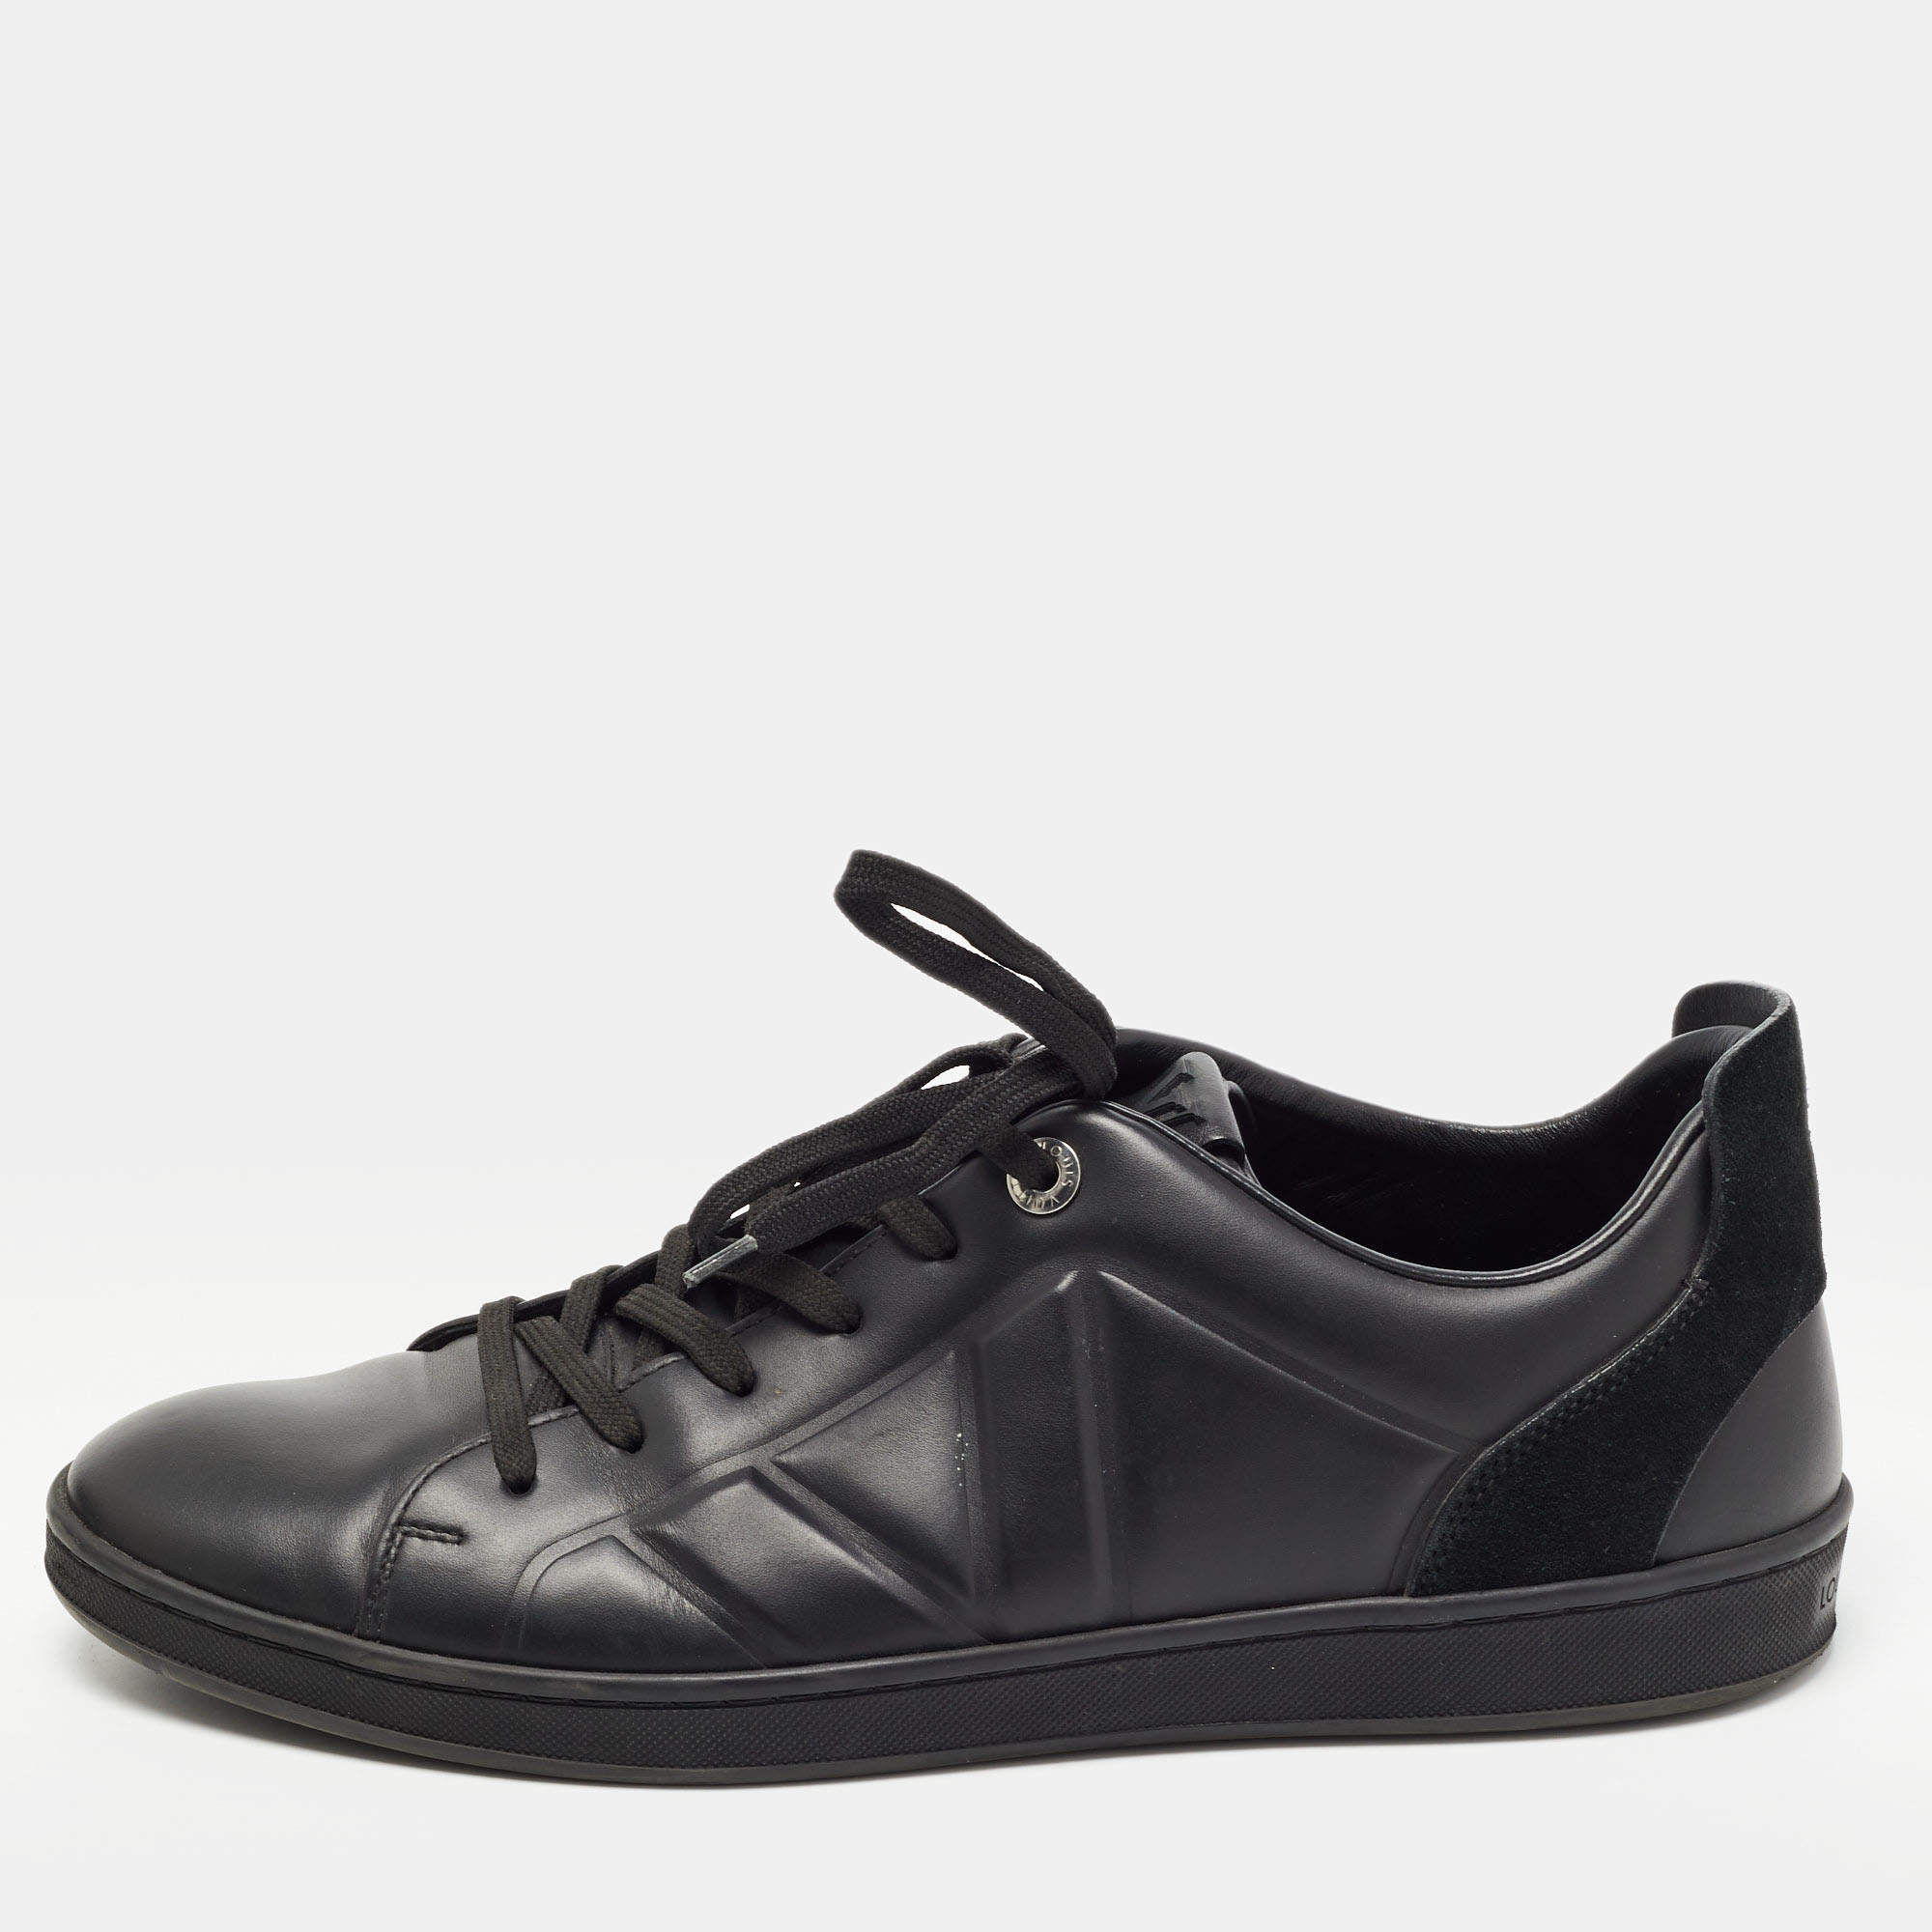 Louis Vuitton, Shoes, Louis Vuitton Mens Leather Shoes